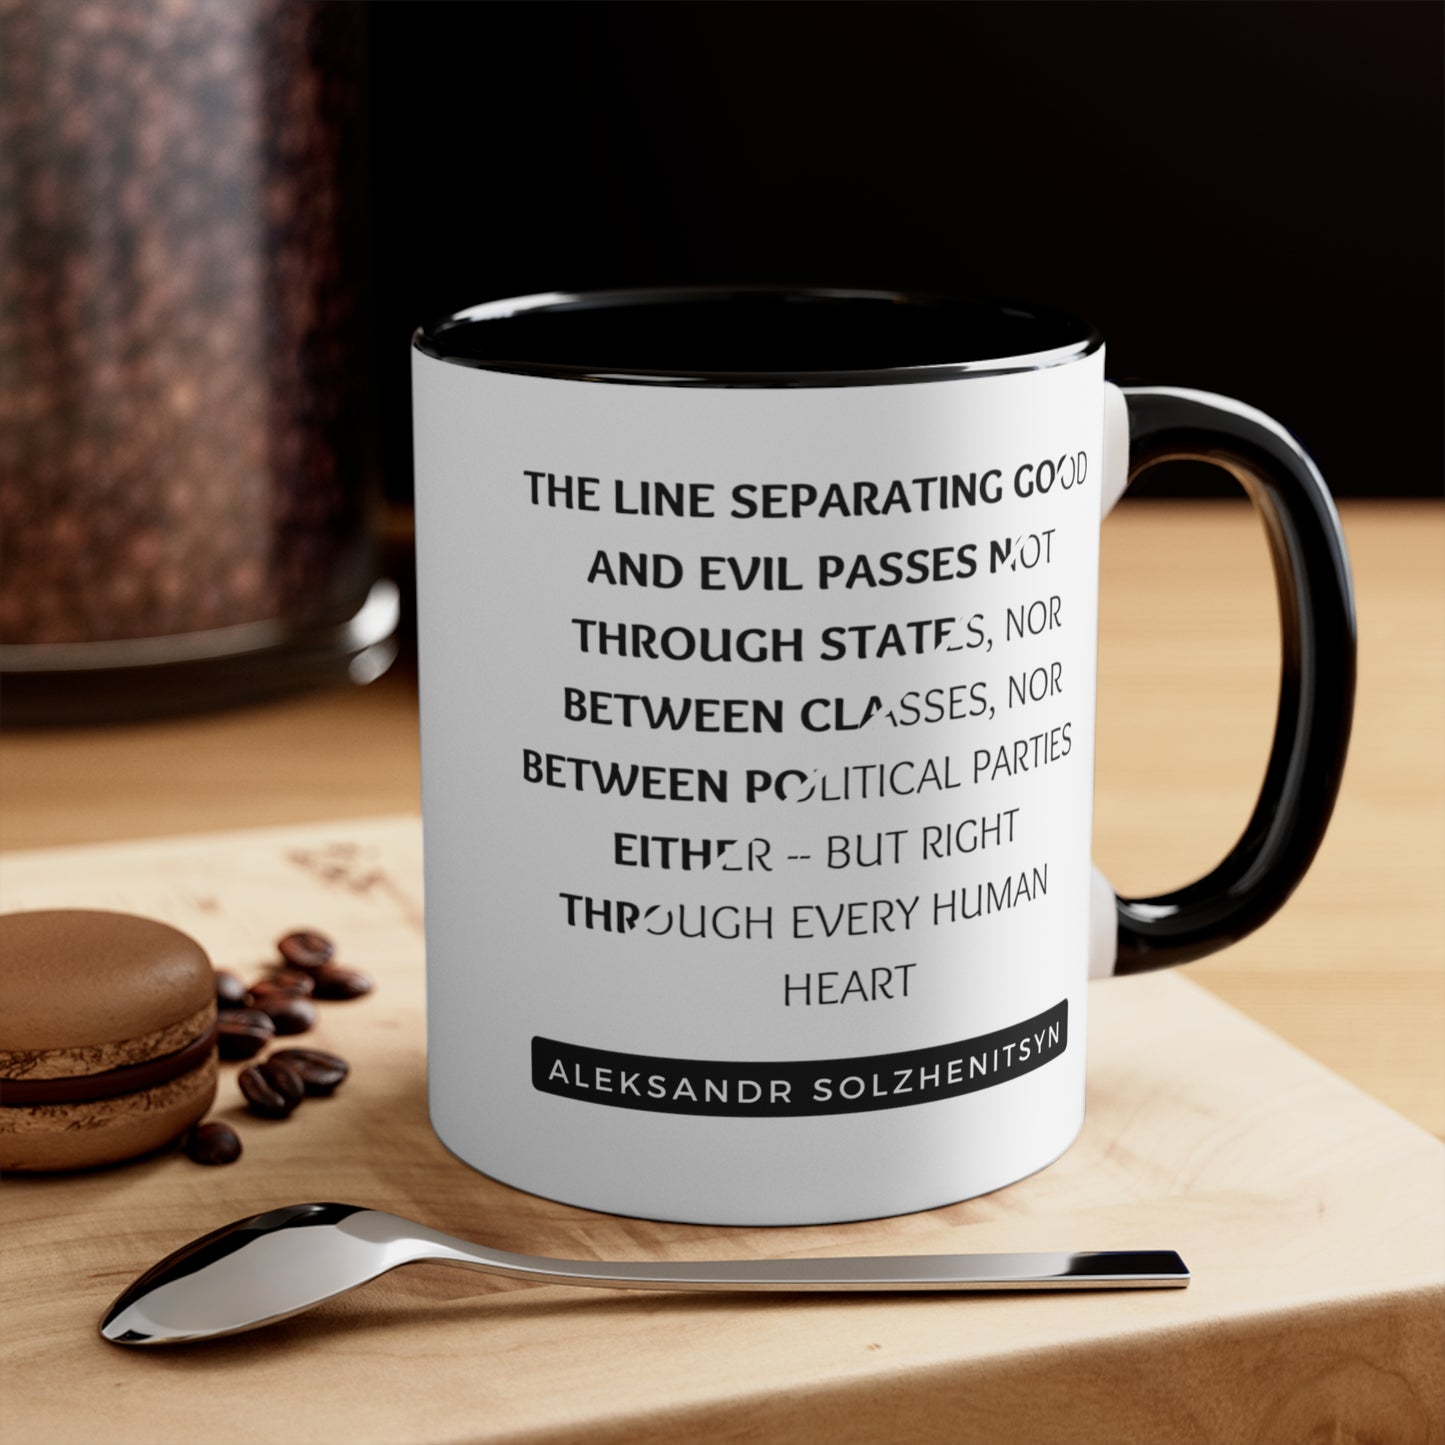 Aleksandr Solzhenitsyn Coffee Mug Black and White